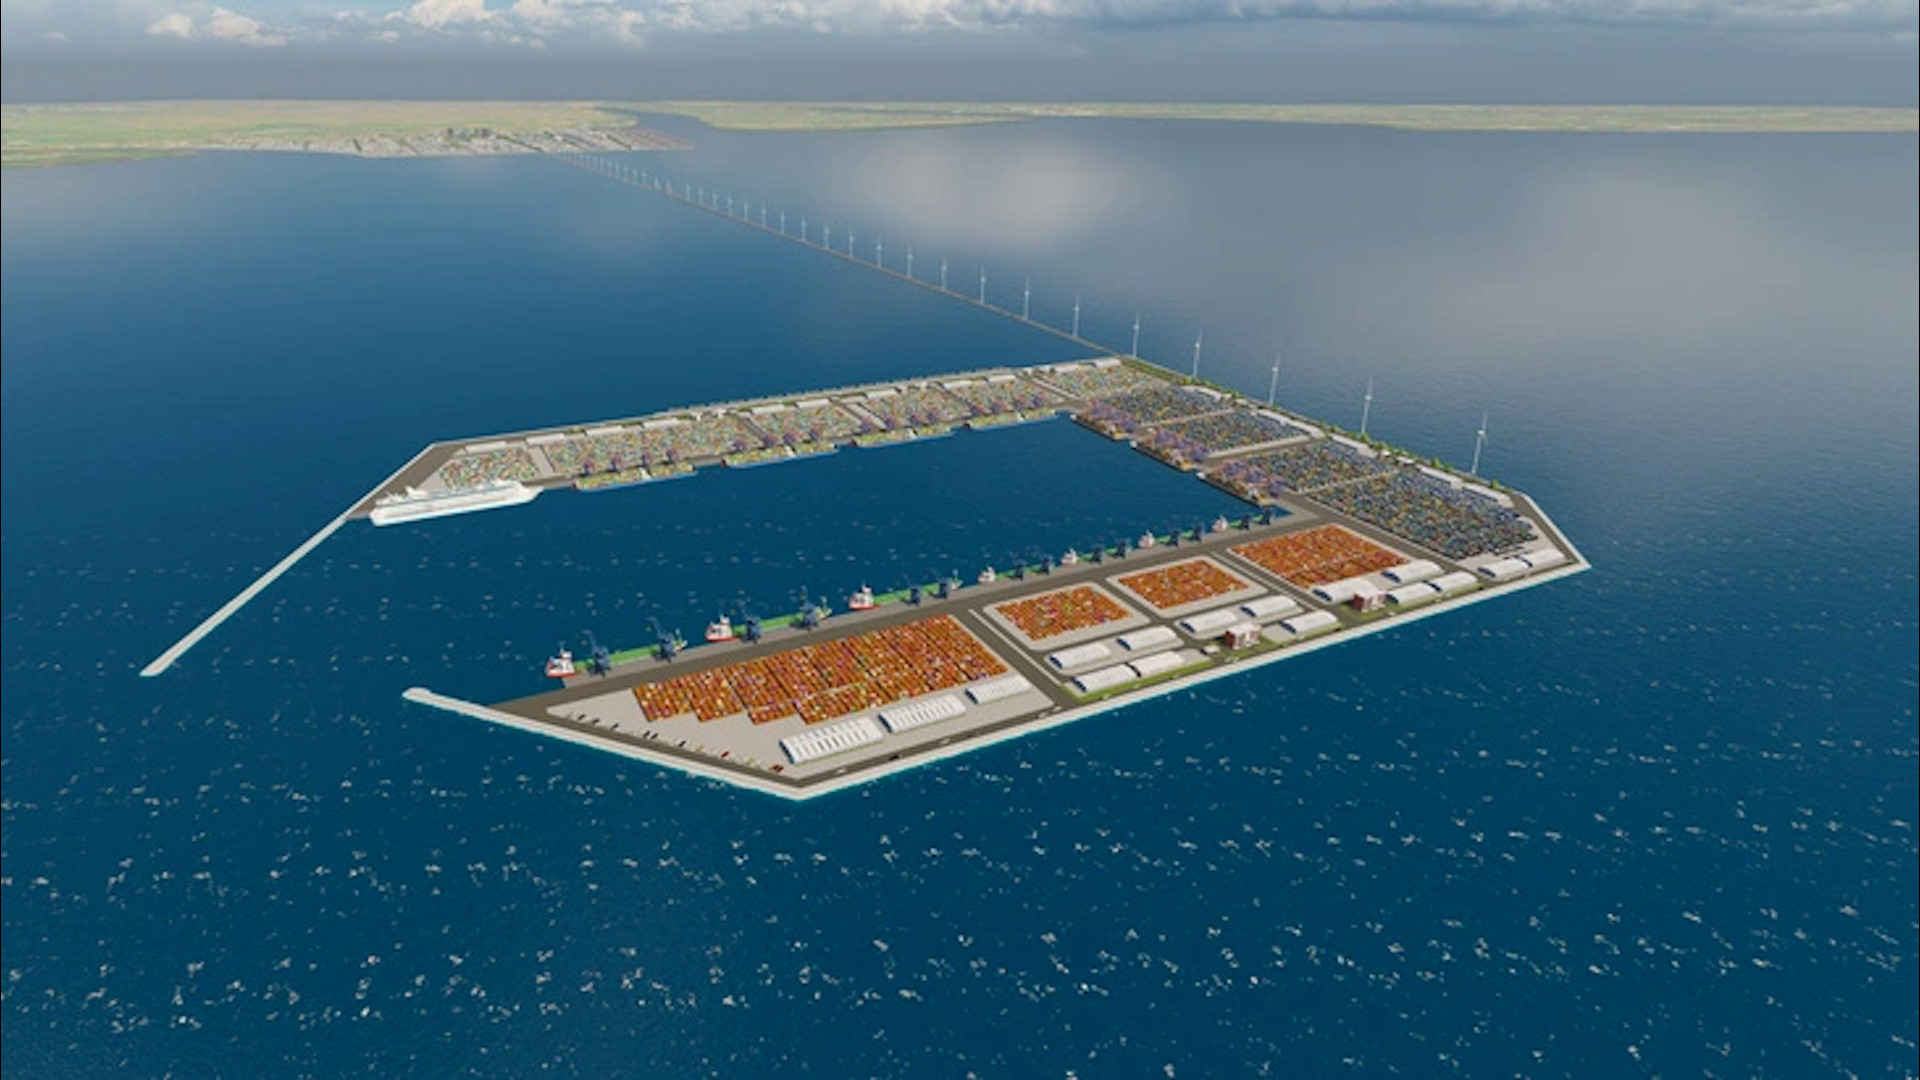 Việt Nam cần hơn 350.000 tỷ đồng đầu tư hệ thống 'siêu' cảng biển